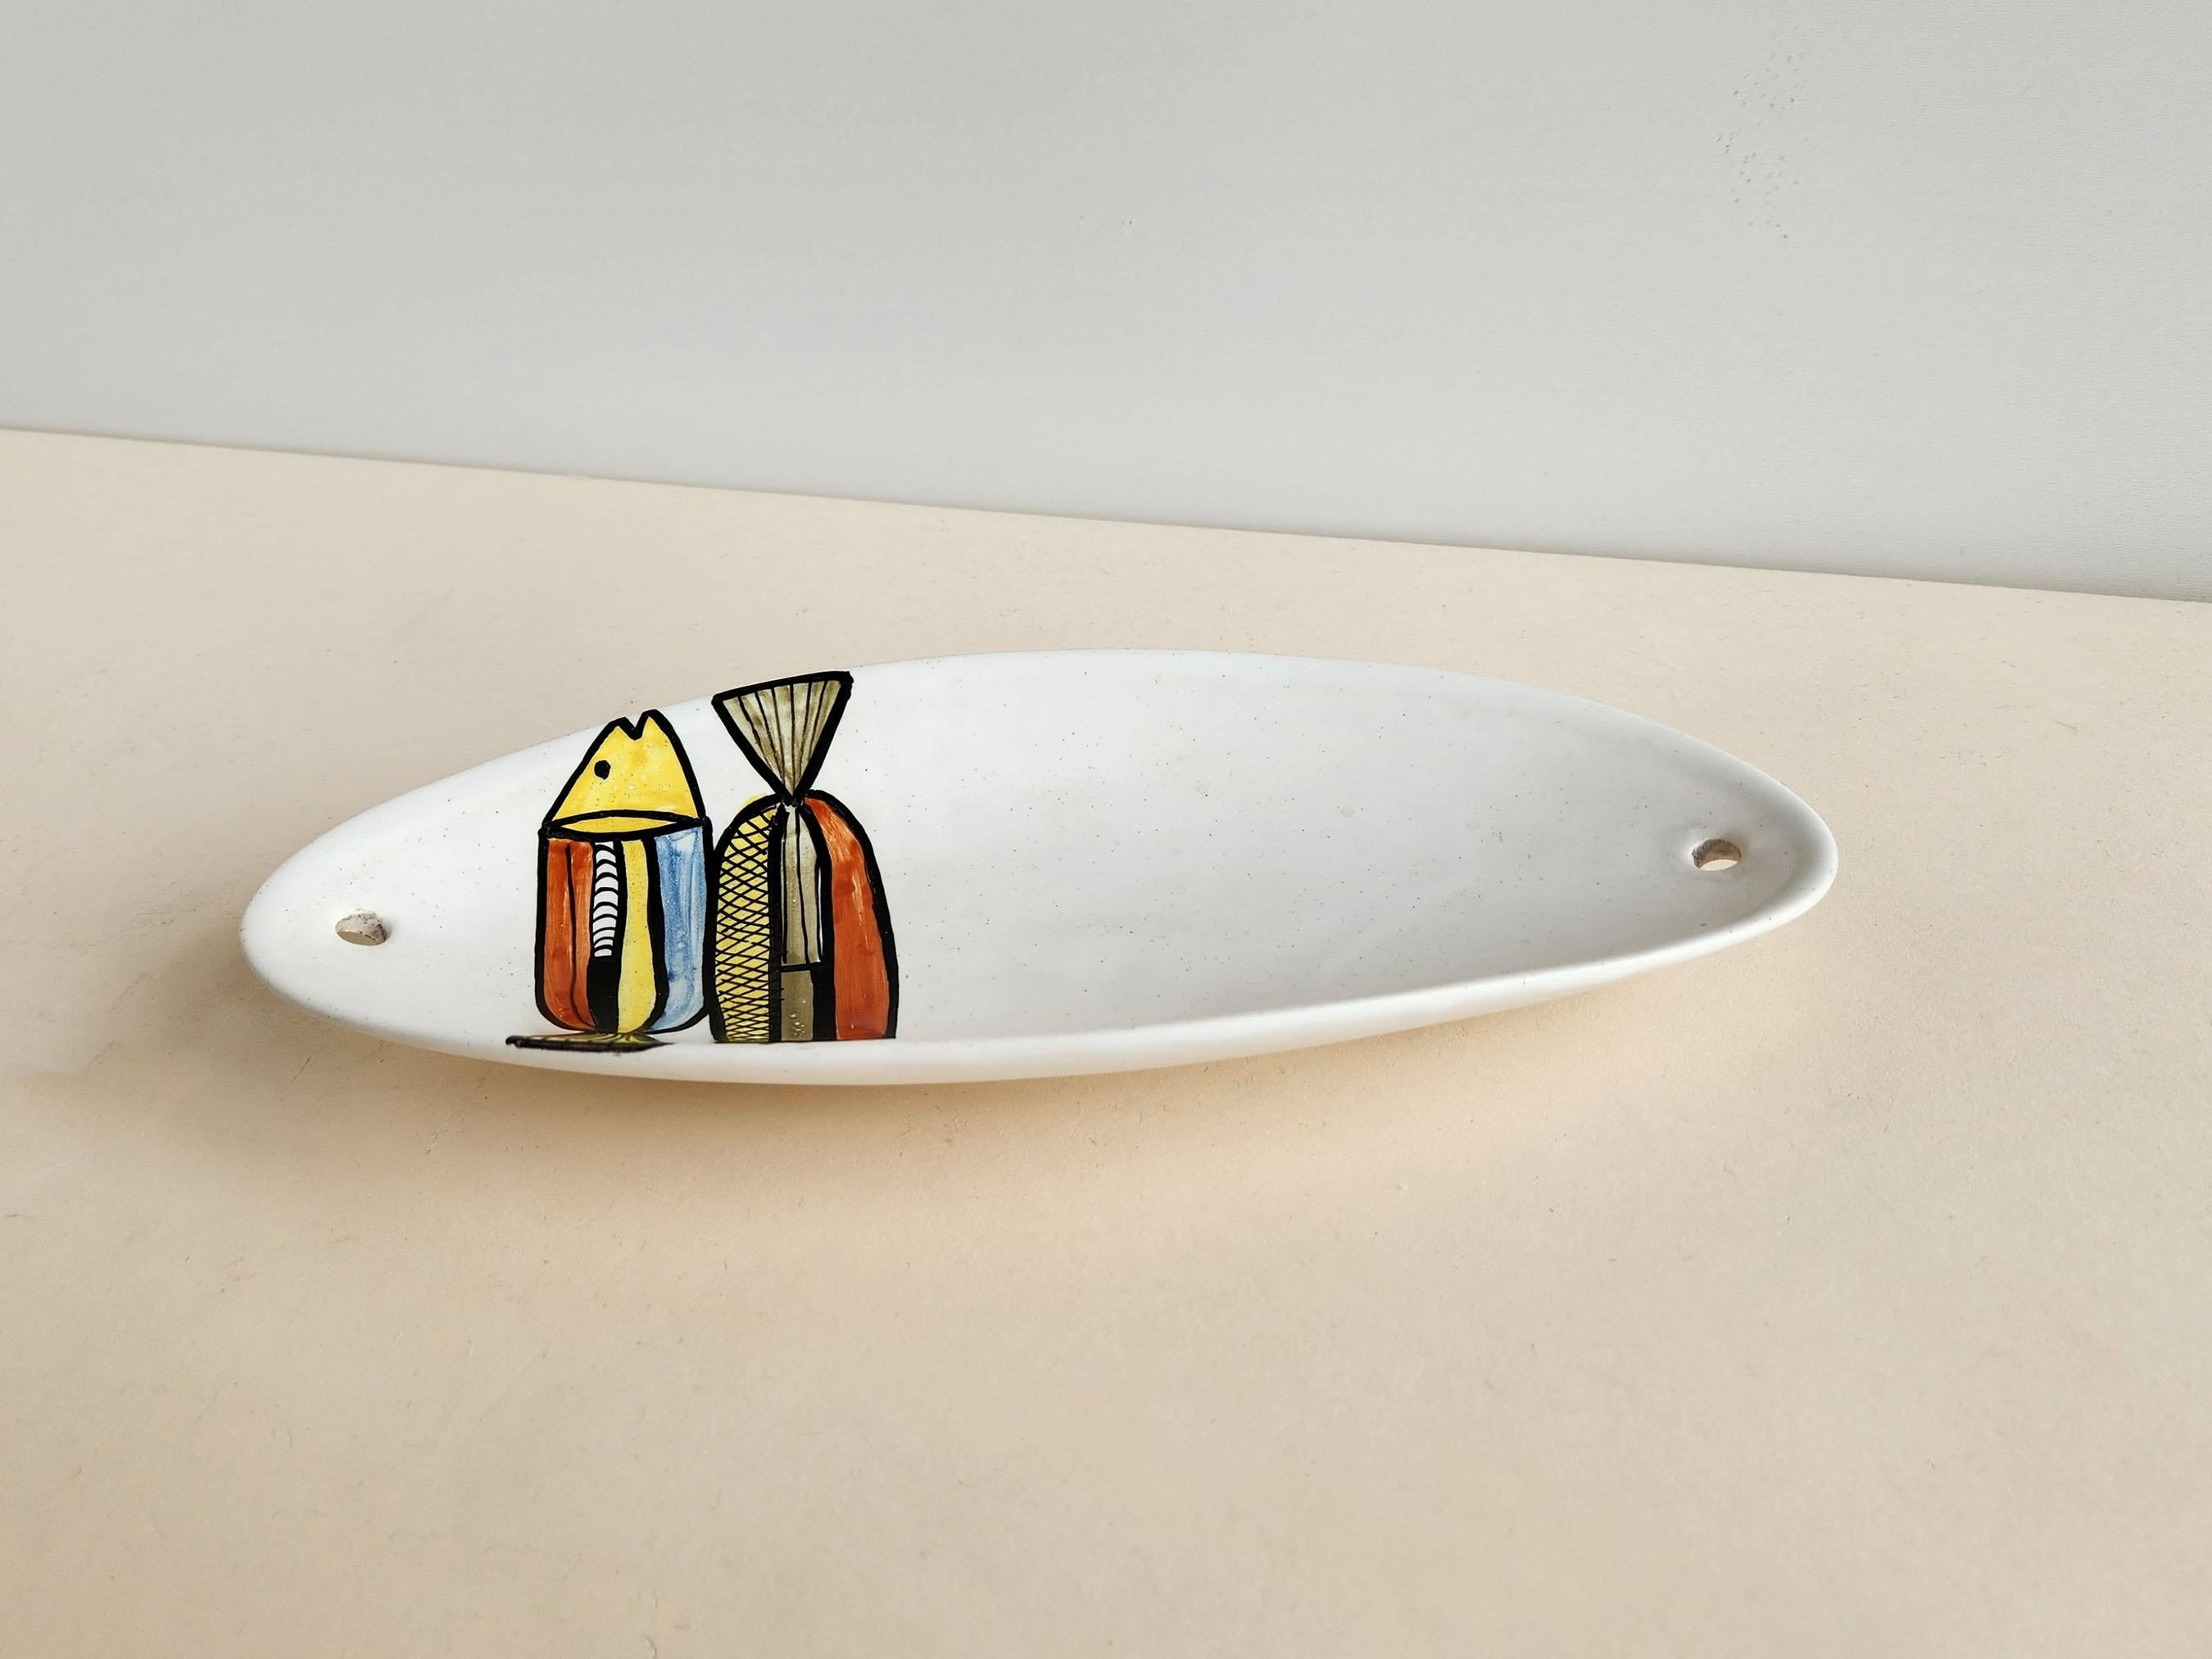 Vintage Keramik Mini Cano Servierplatte mit Fischmotiv von Roger Capron - Vallauris, Frankreich

Roger Capron war ein einflussreicher französischer Keramiker, der für seine Kacheltische und die Verwendung wiederkehrender Motive wie stilisierte